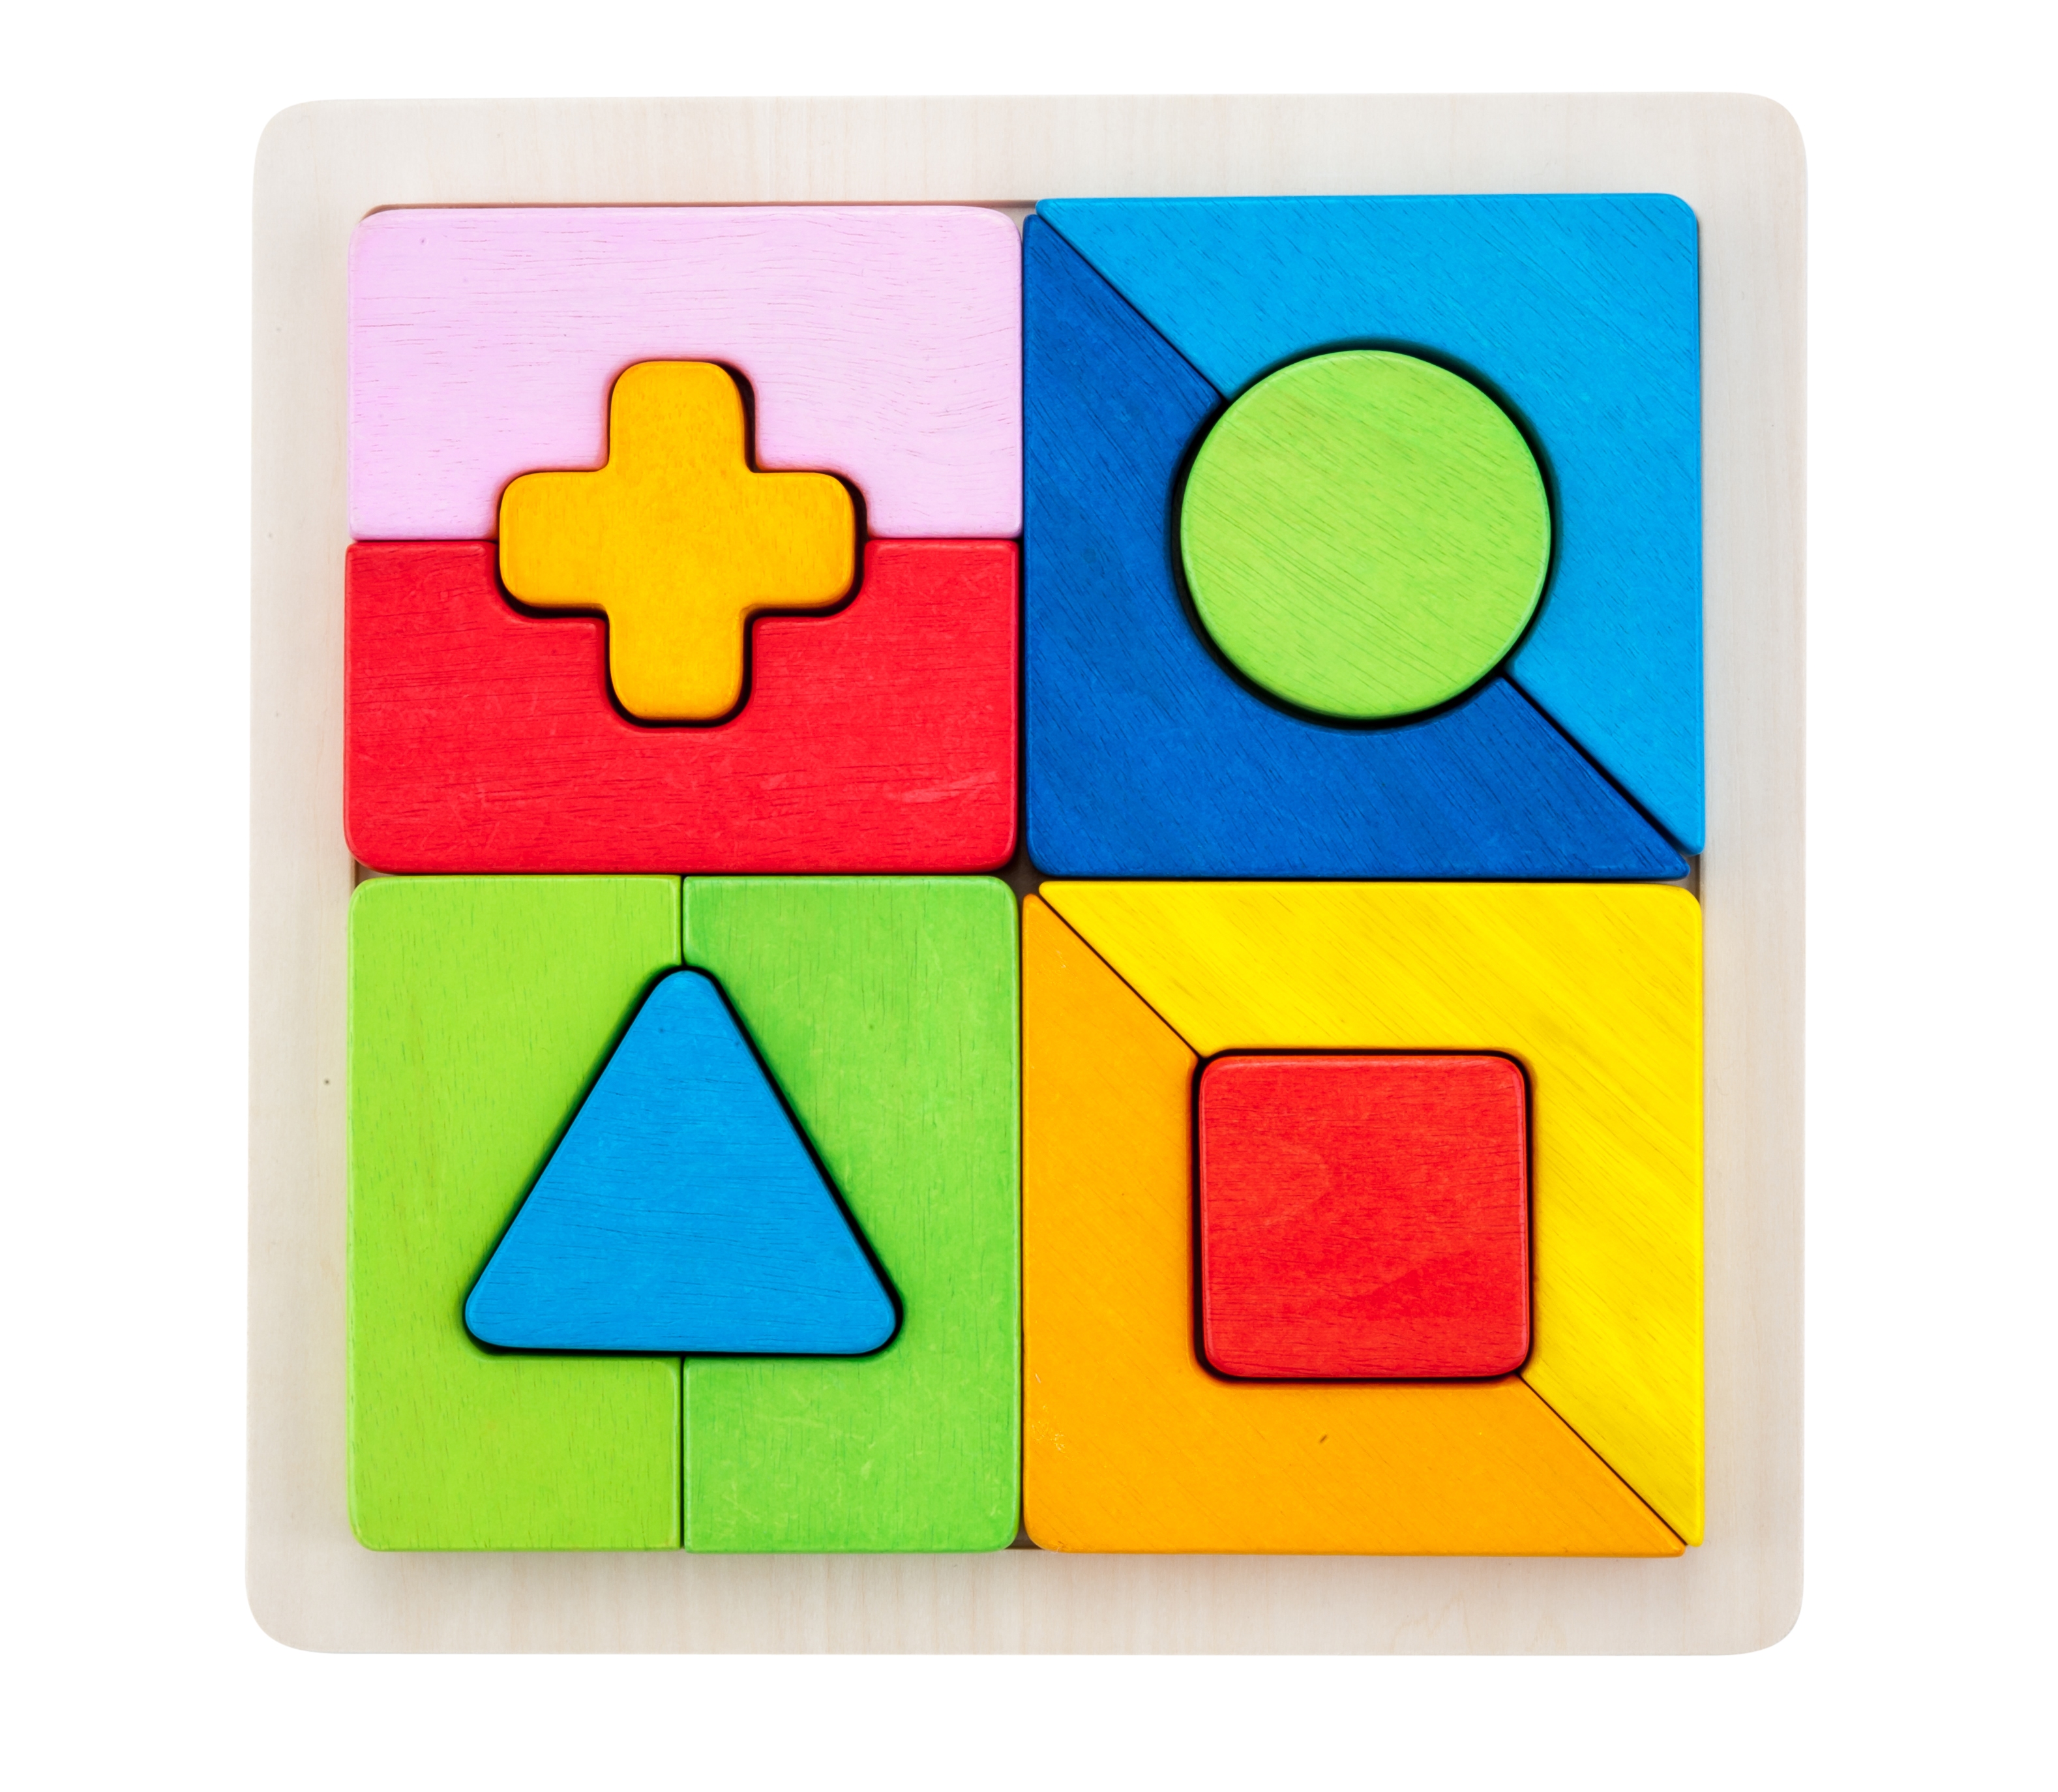 610029 - Sorteerbord geometrisch vormen multiplex/rubberhout